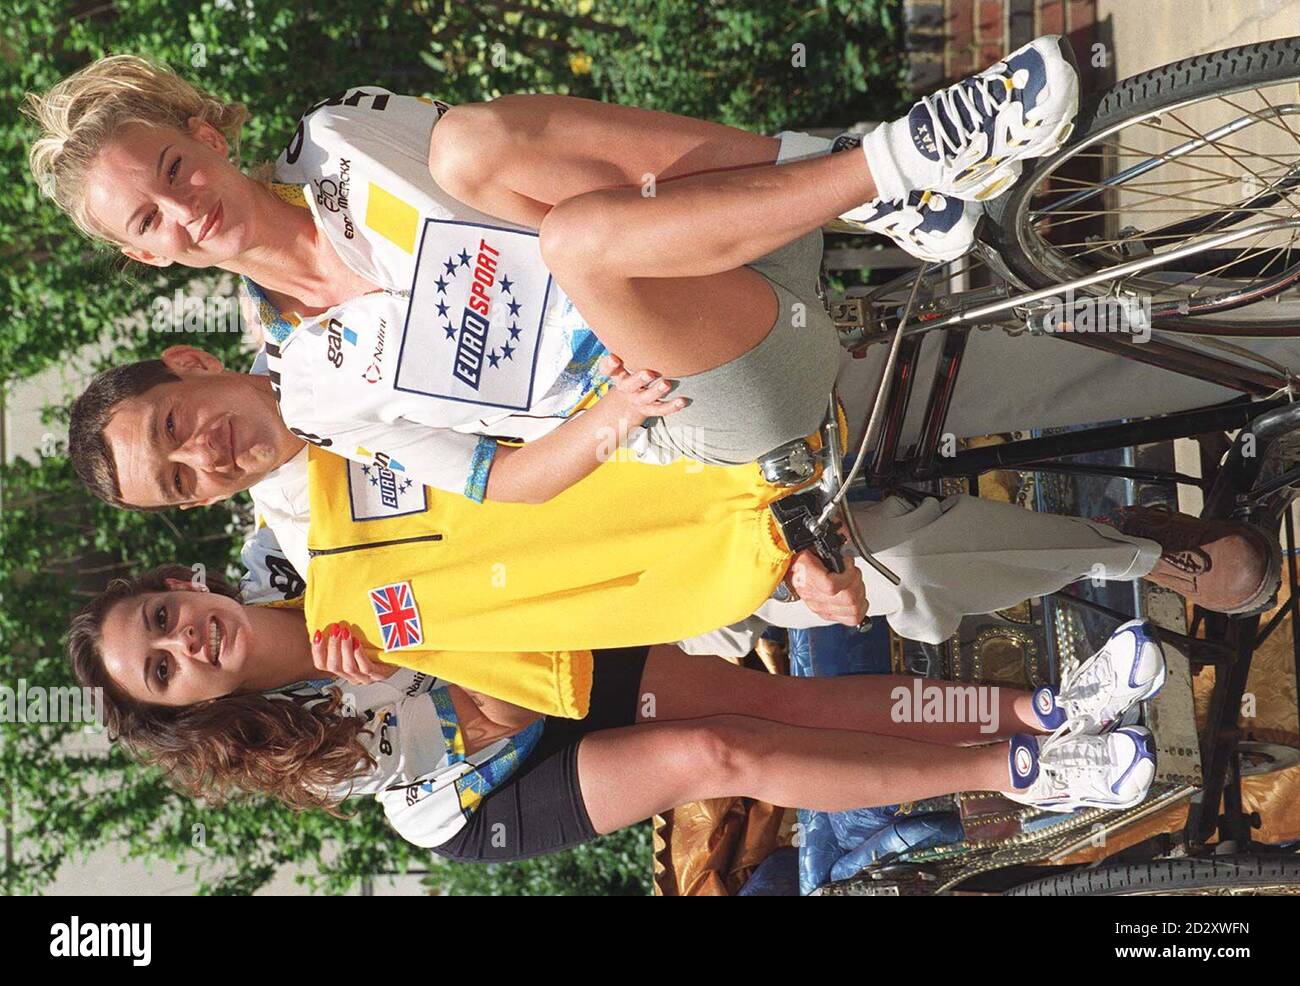 Der Oylmpic-Medaillengewinner Chris Boardman wird von Lisa Bangert und Silver Barmham (rechts) begleitet, um Eurosports Berichterstattung über die Tour de France zu starten. Foto von Dave Cheskin/PA Stockfoto